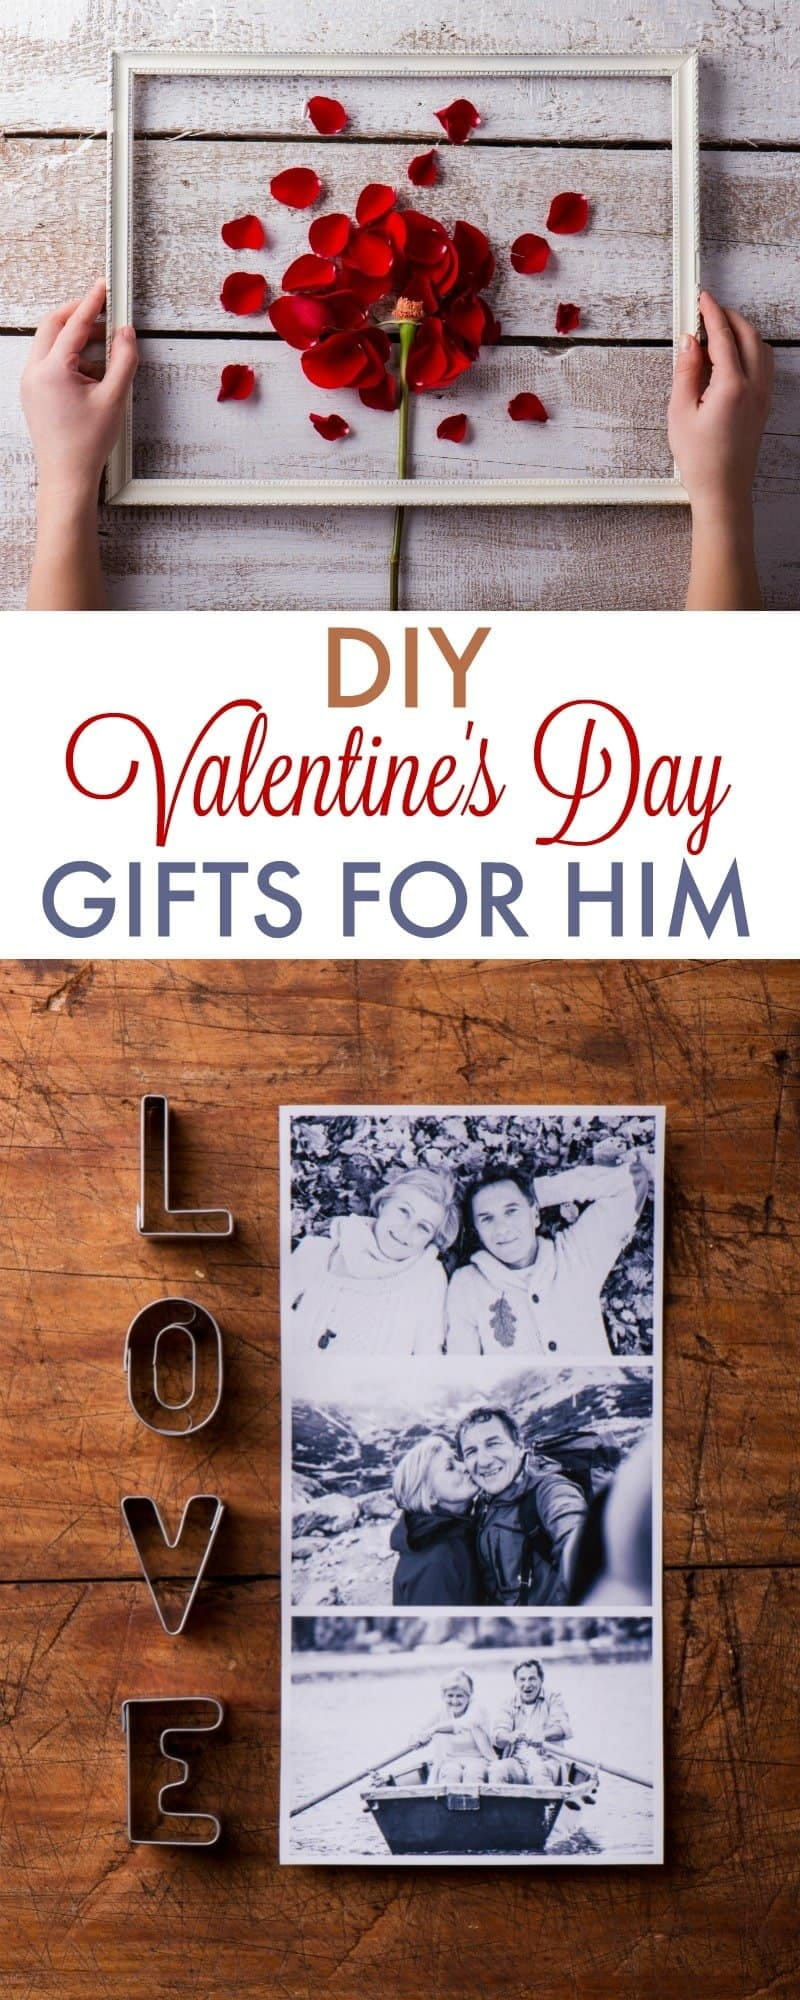 DIY Gift Idea For Boyfriend
 DIY Valentine s Day Gifts for Boyfriend 730 Sage Street